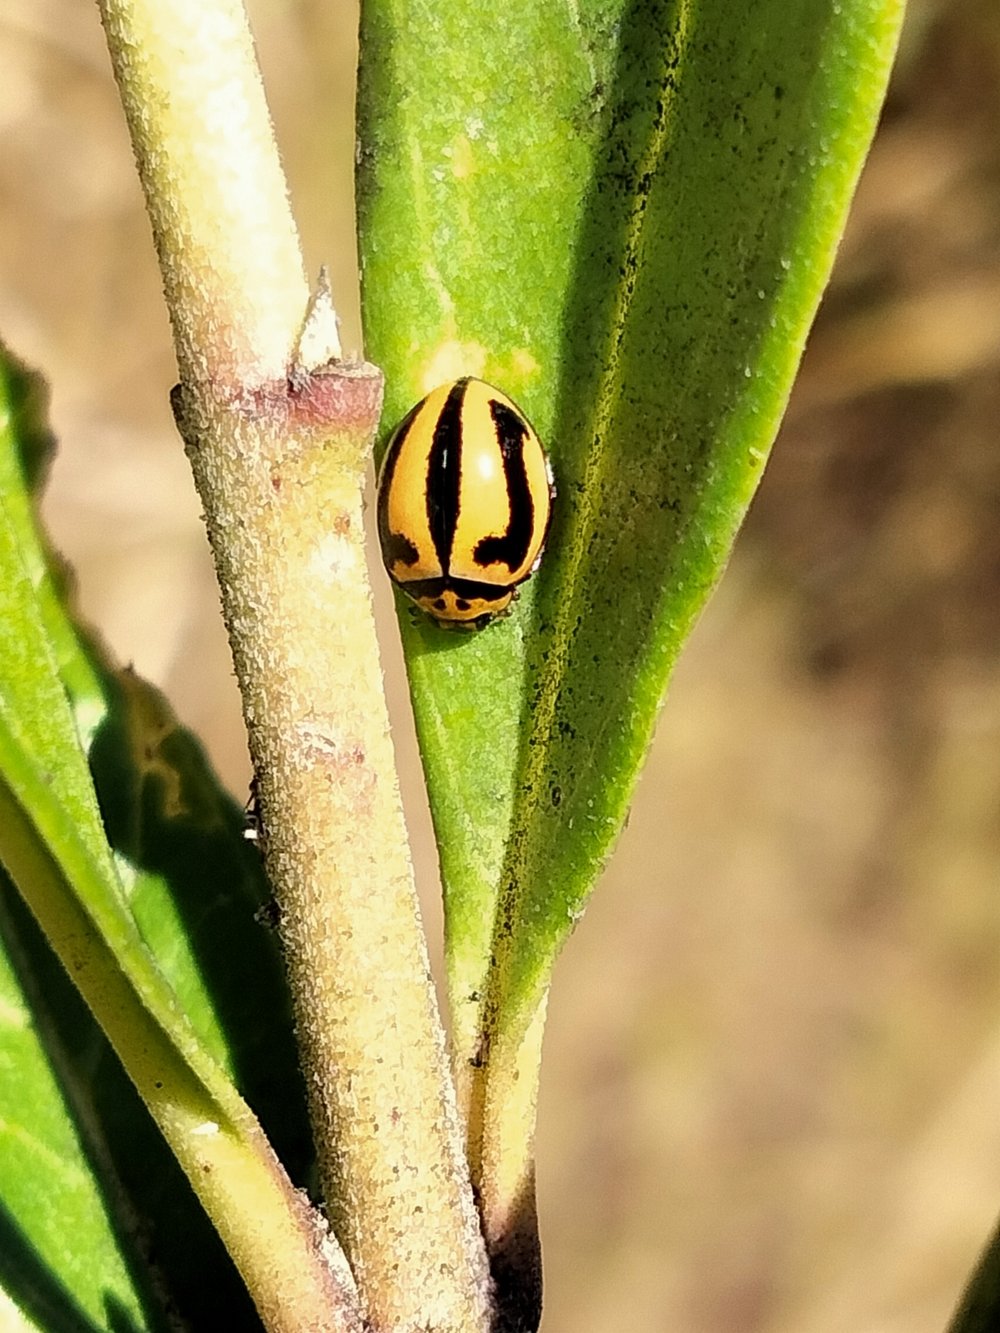   Micraspis frenata  - Striped Ladybird 